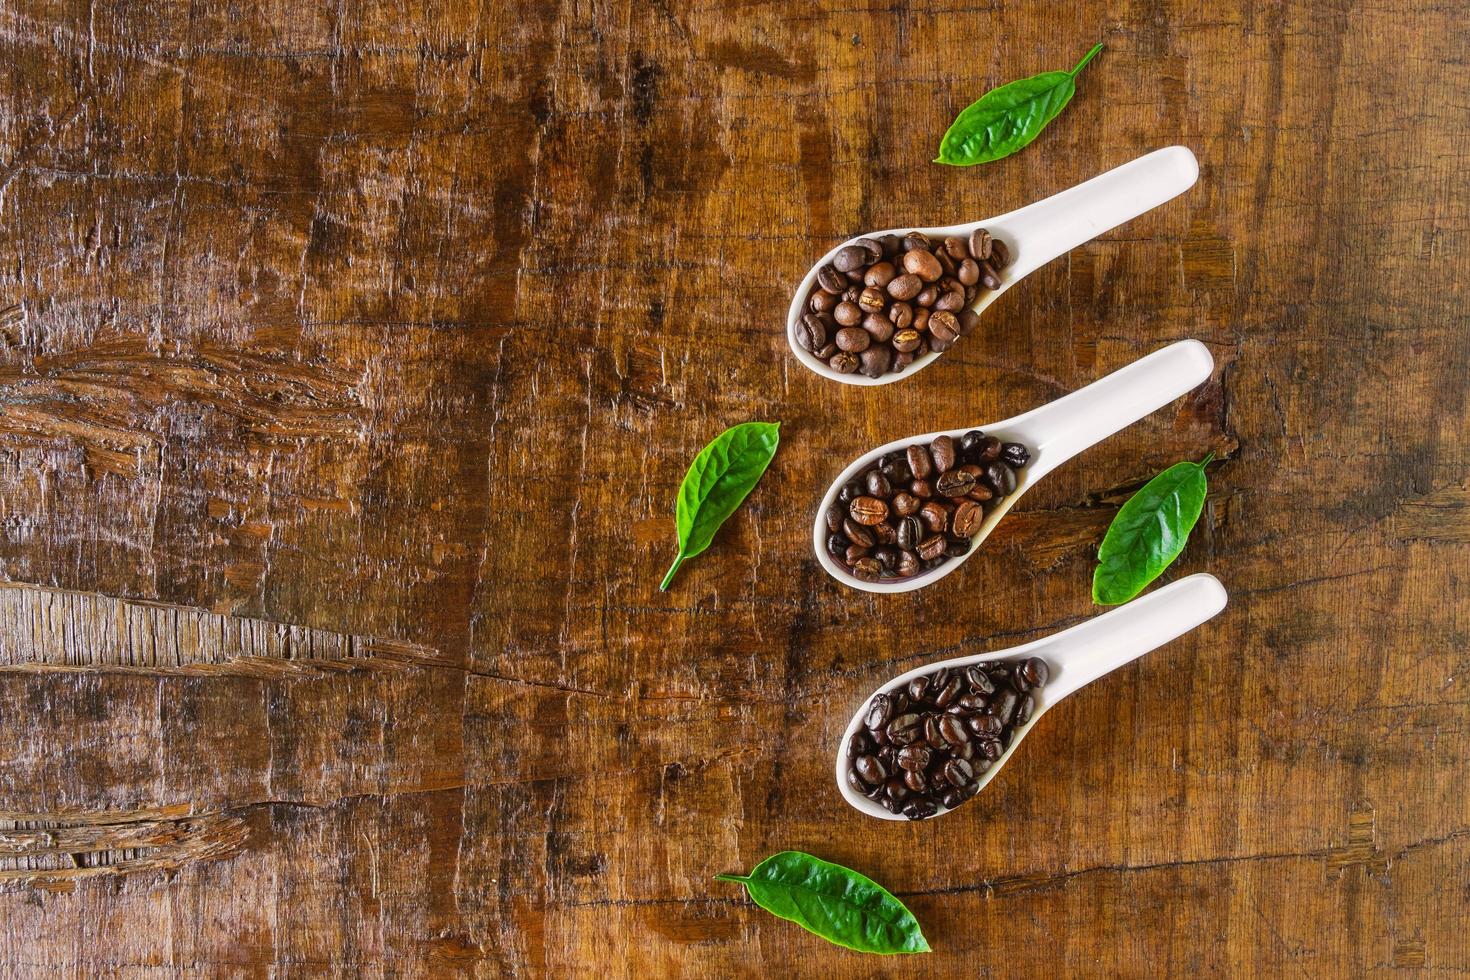 Un collage de granos de café en una cuchara que muestra varias etapas hasta el tueste. foto